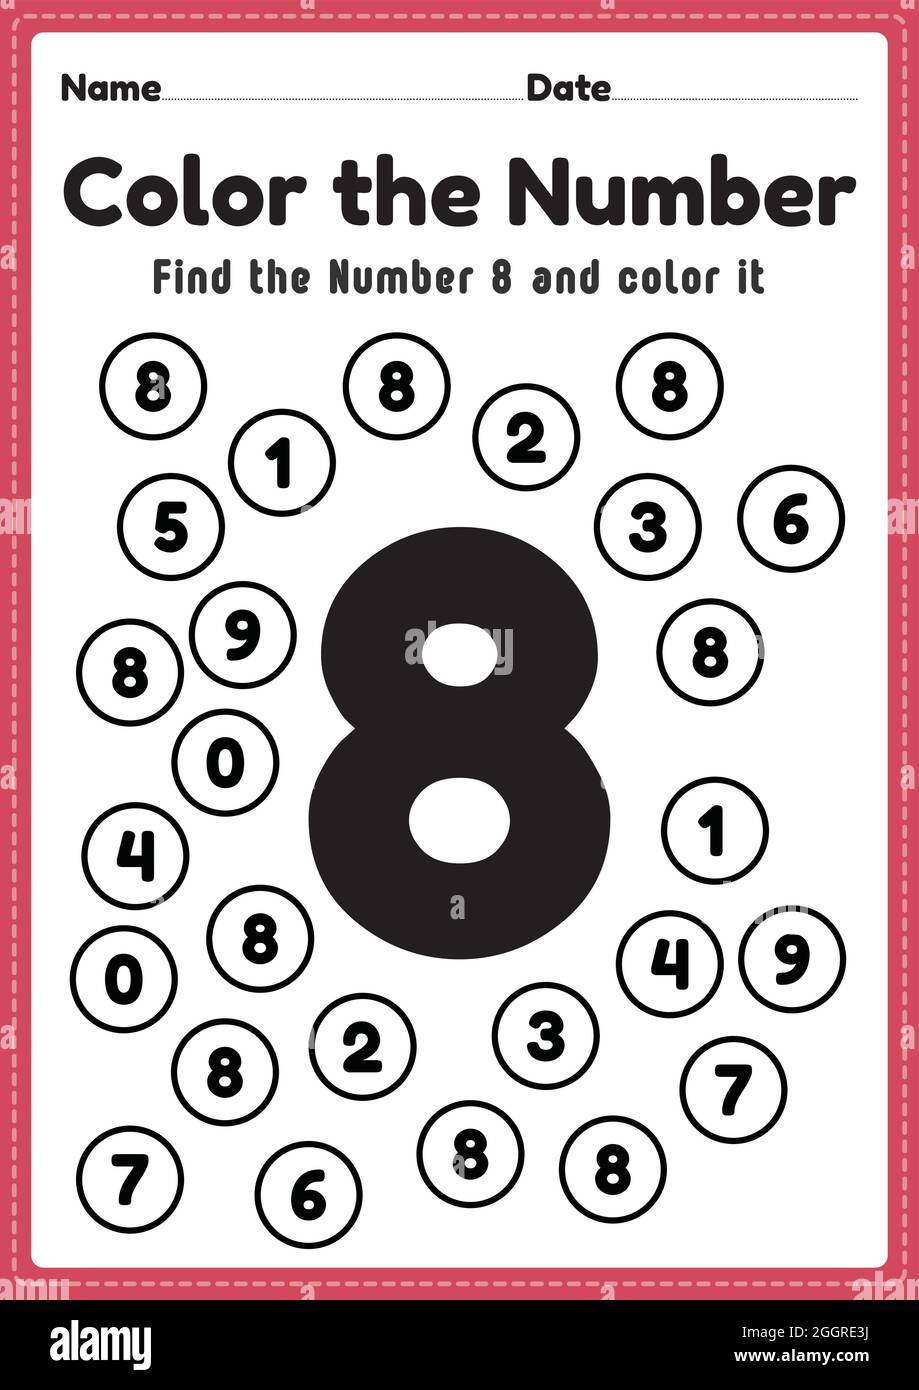 number-8-worksheets-for-children-kindergarten-coloring-pages